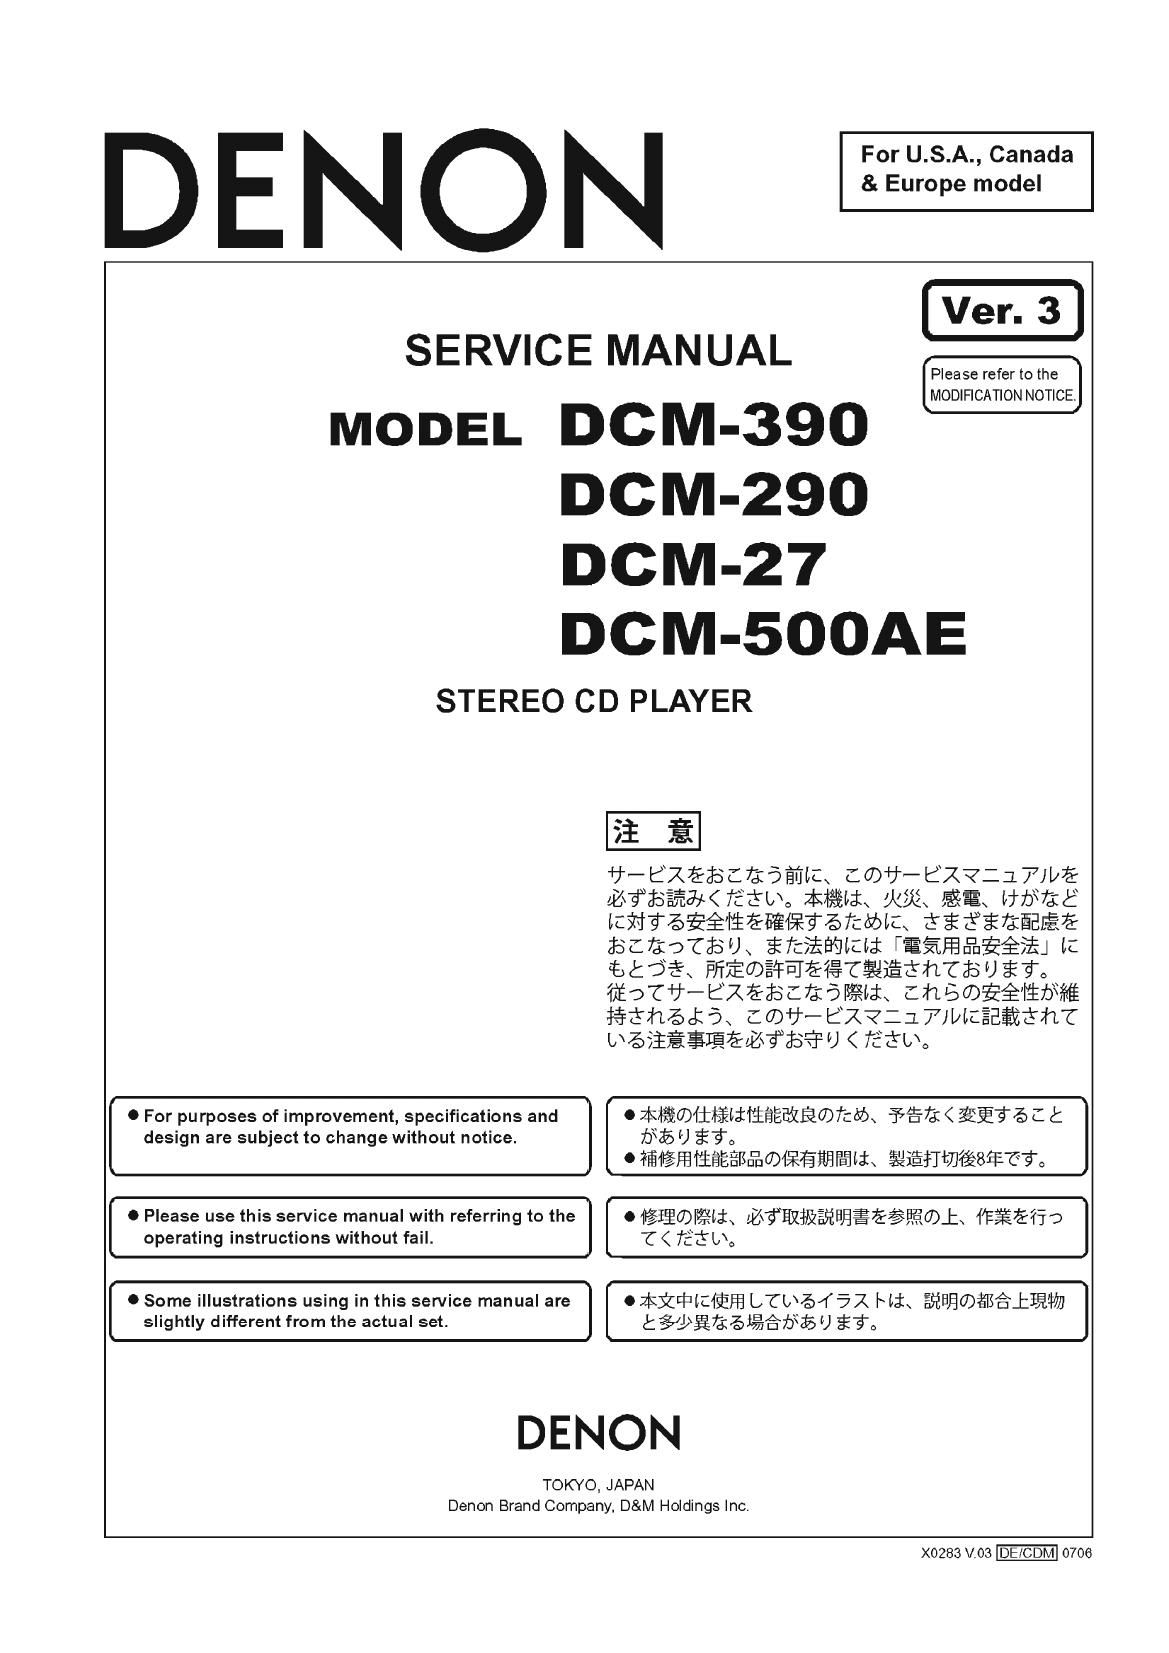 Denon DCM 27 Service Manual